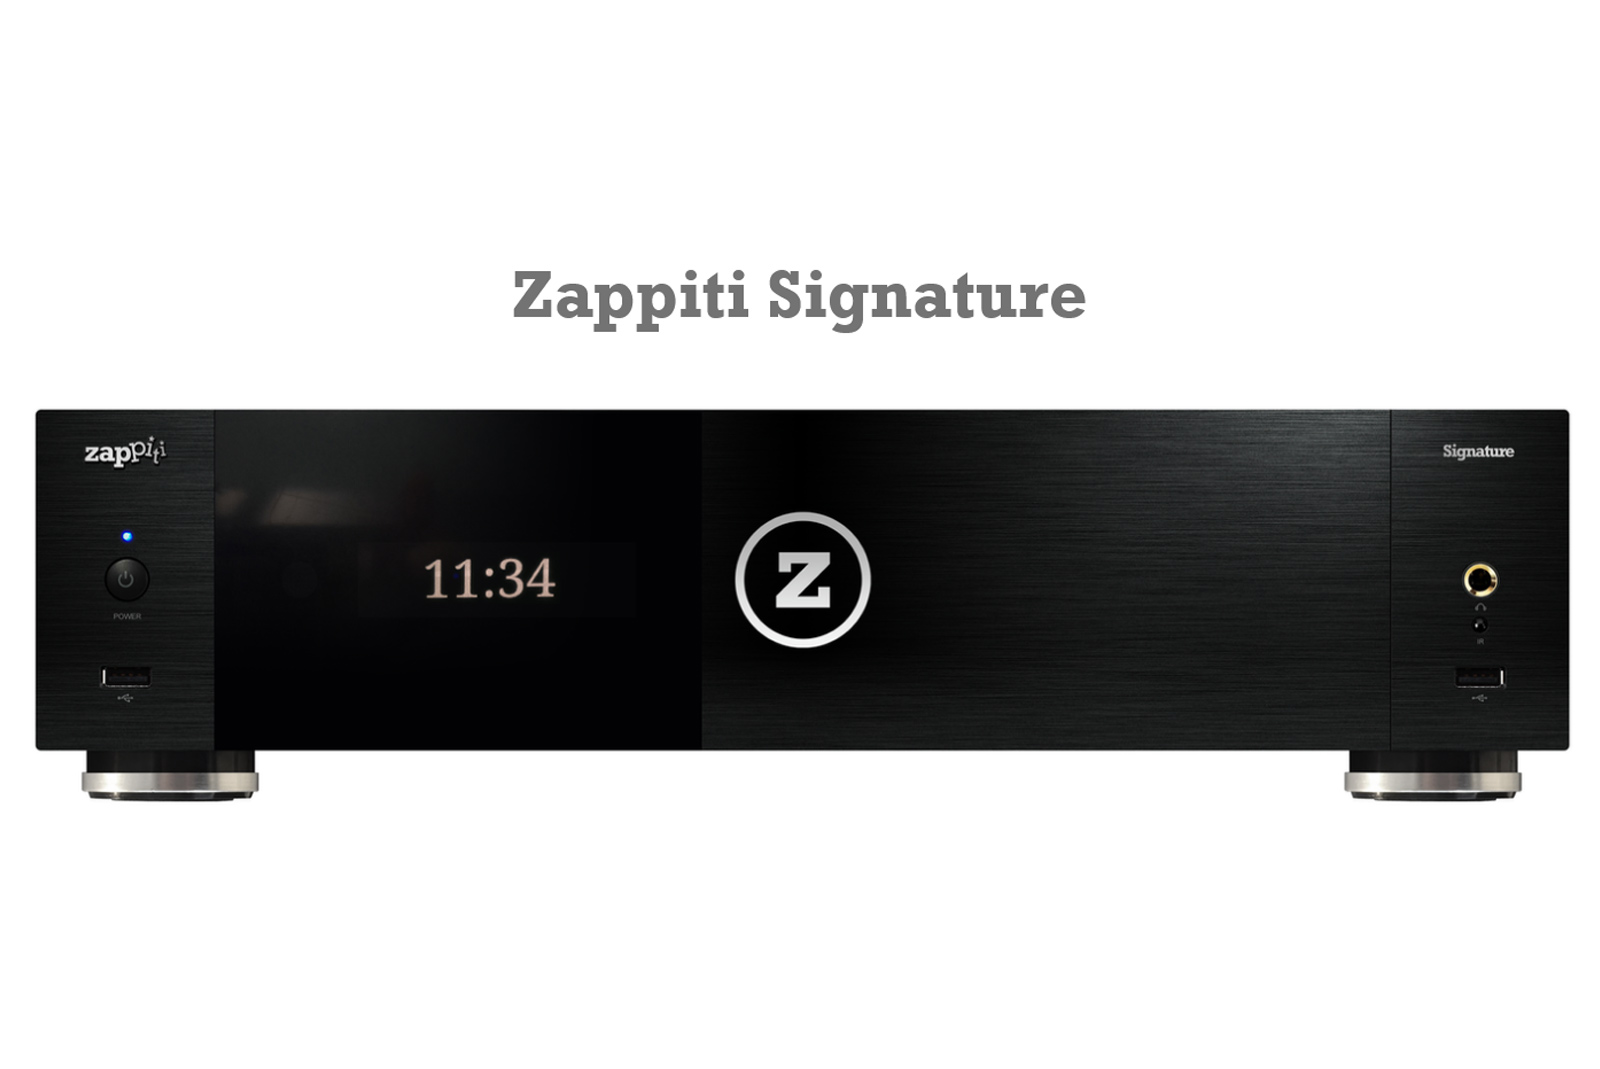 Zappiti Signature